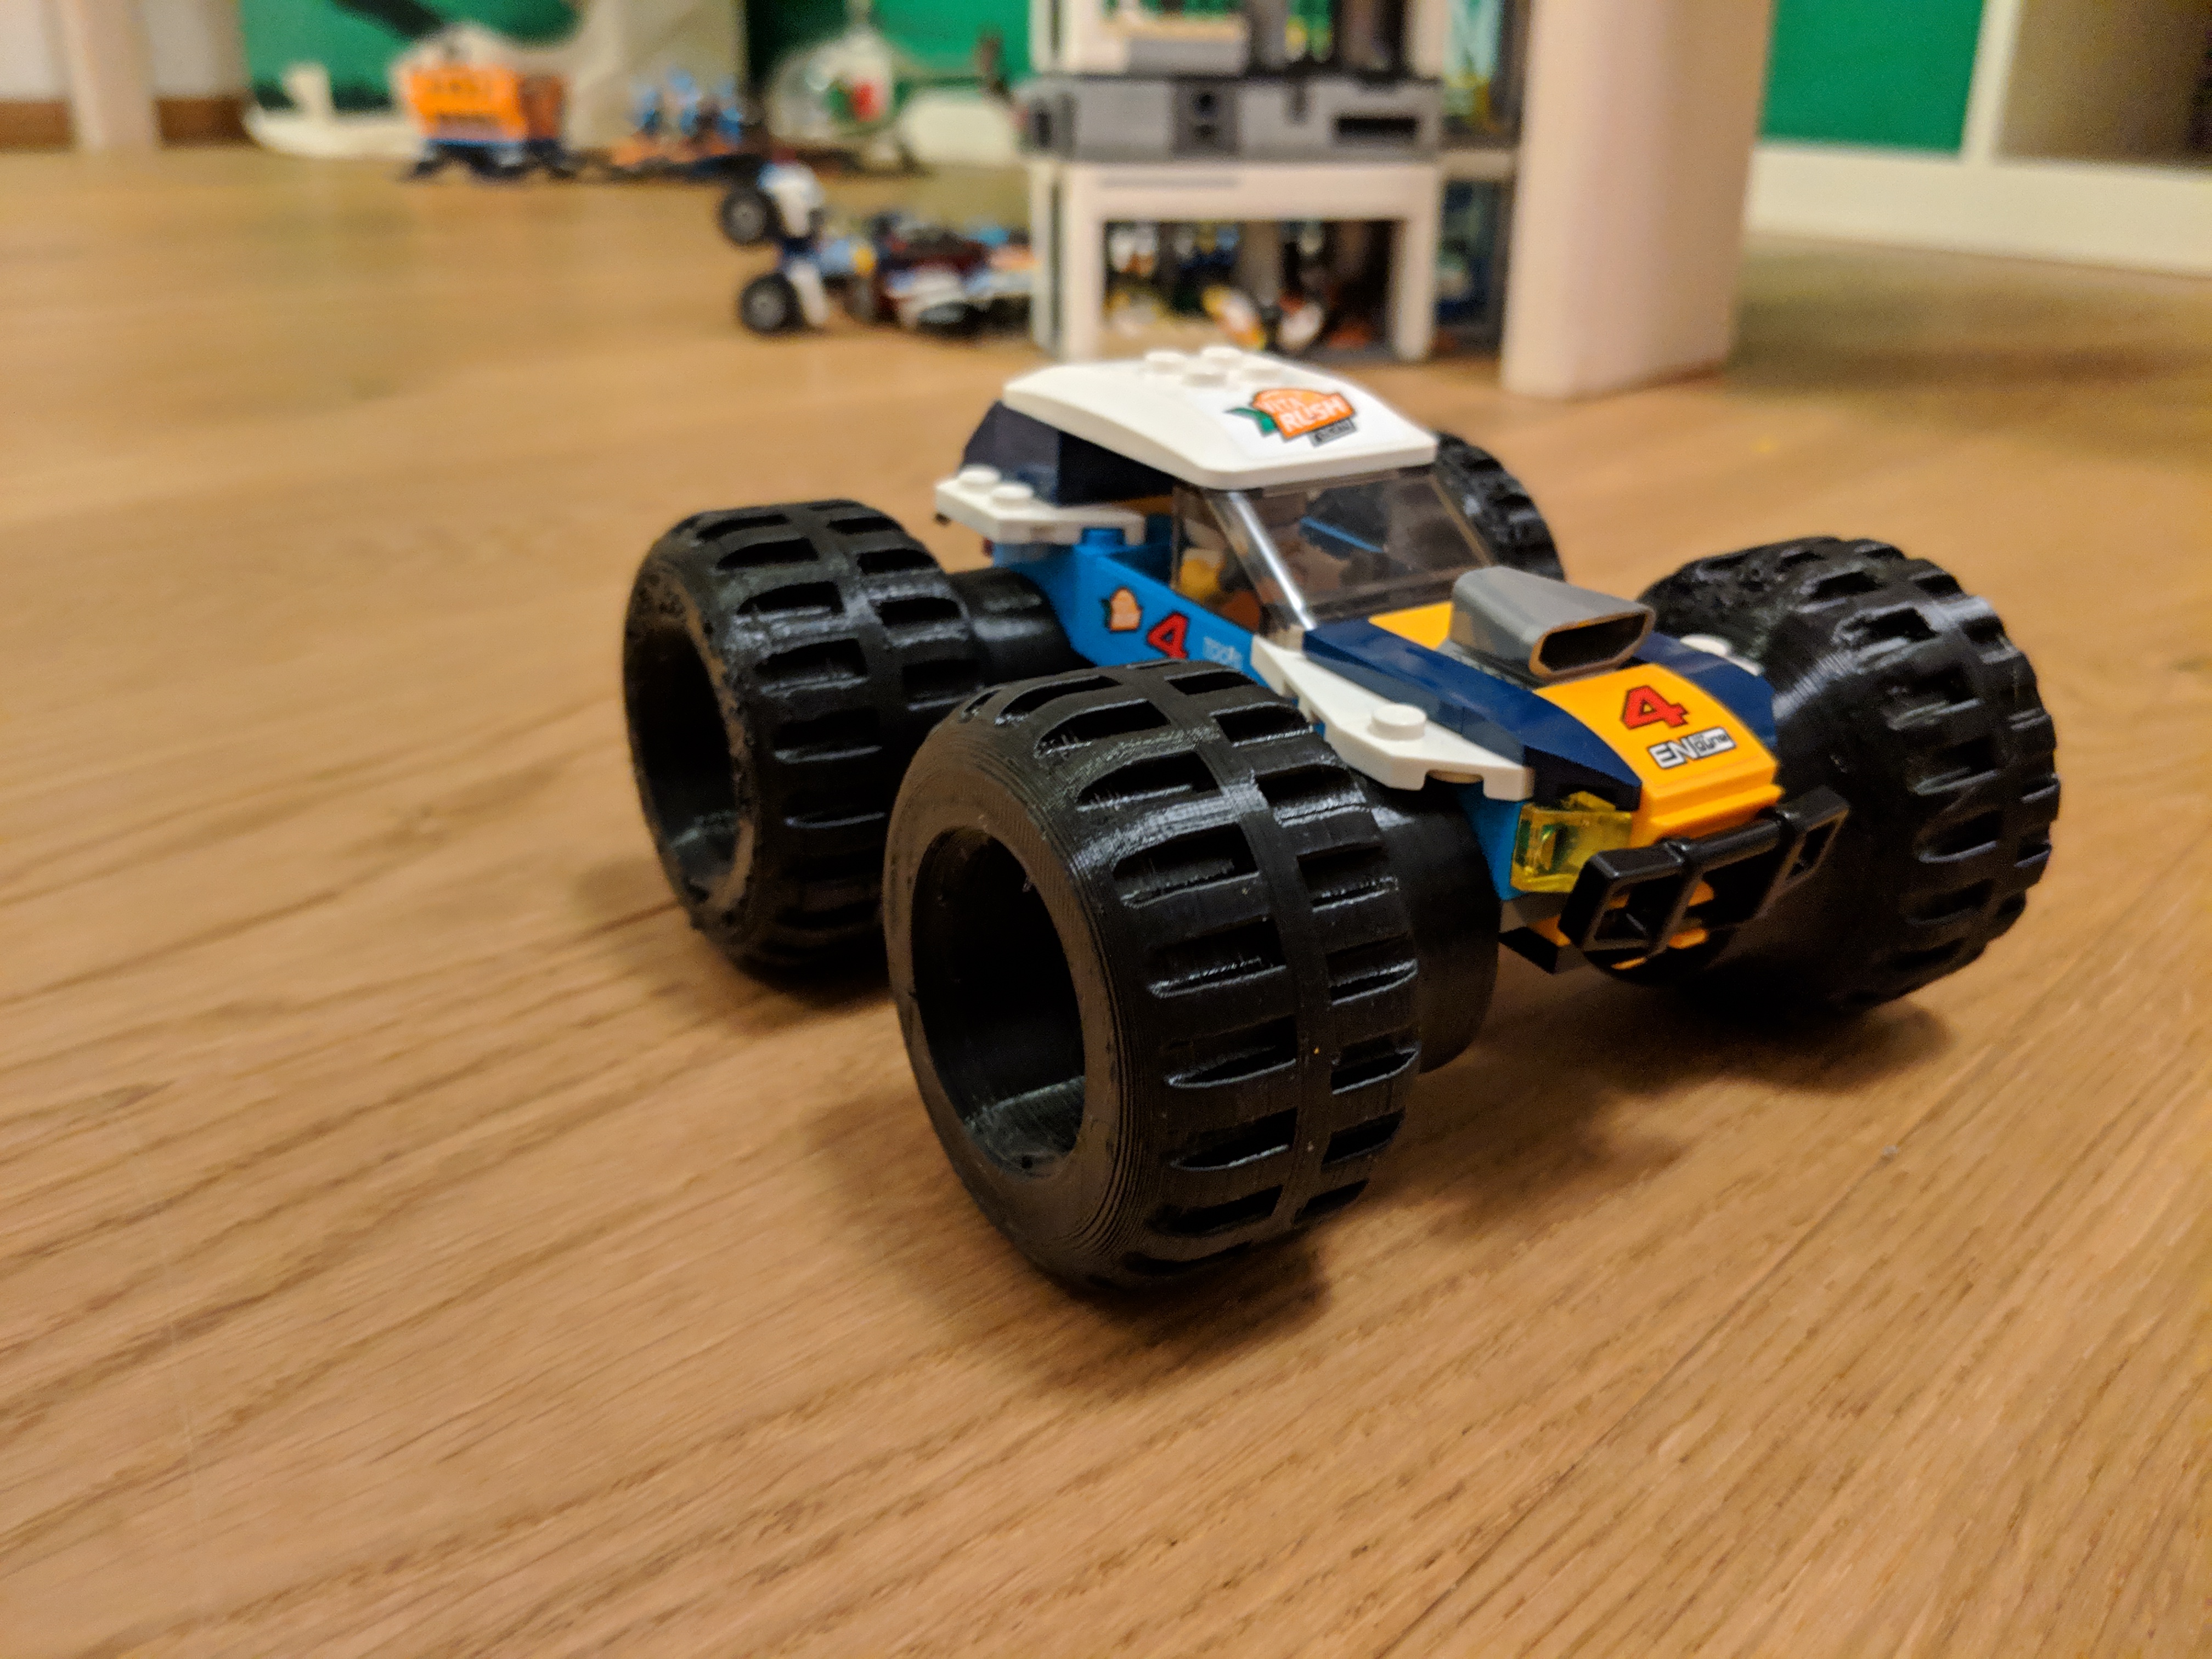 Monstertruck tire for a desert buggy eg. Lego car